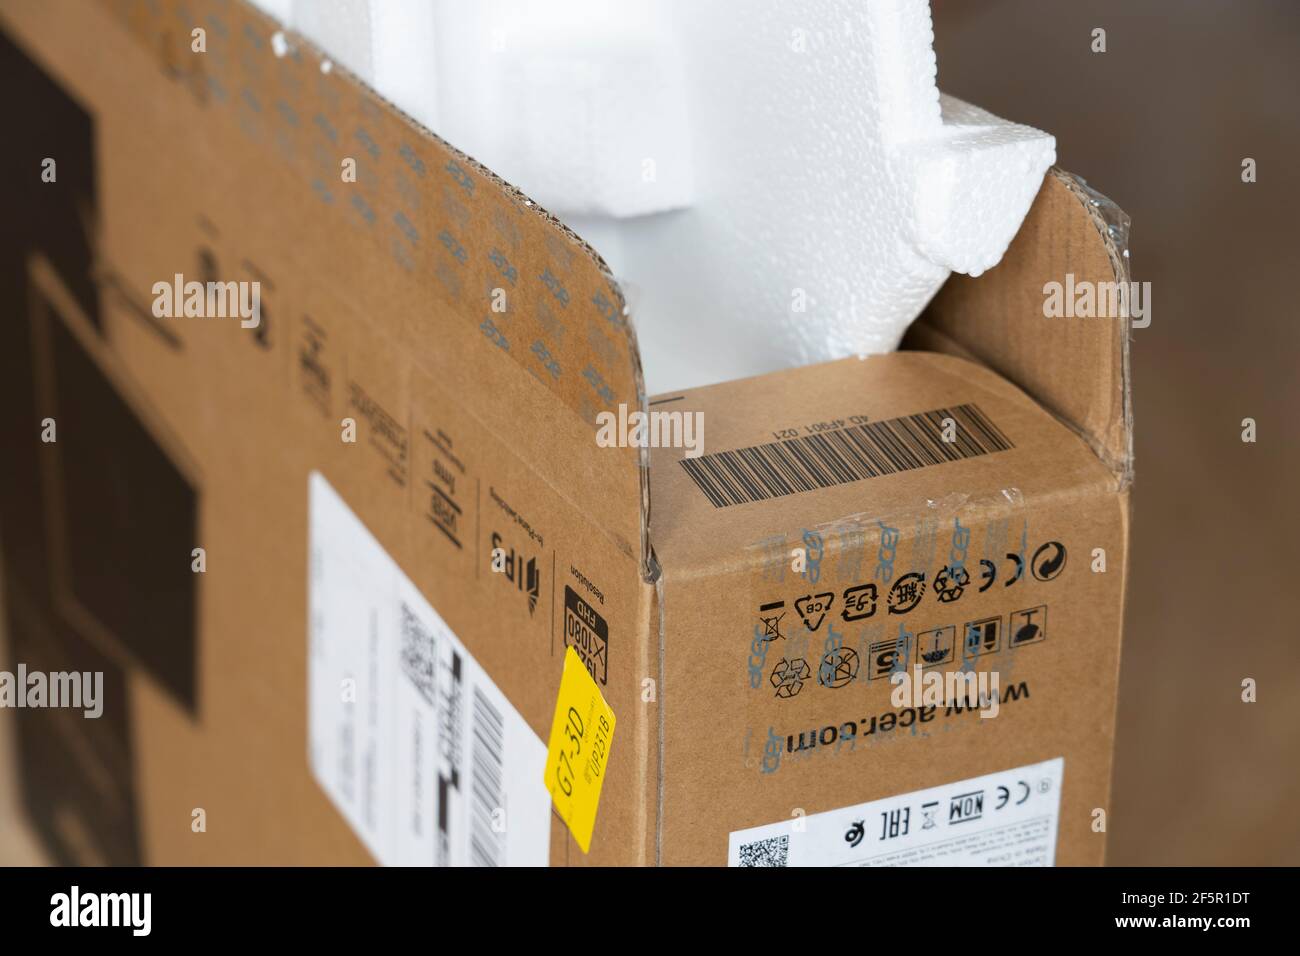 Gros plan sur une boîte en carton pour un écran D'ordinateur ACER avec un  emballage en polystyrène expansé. Thème : achats en ligne, emballages de  déchets, culture de consommation Photo Stock -